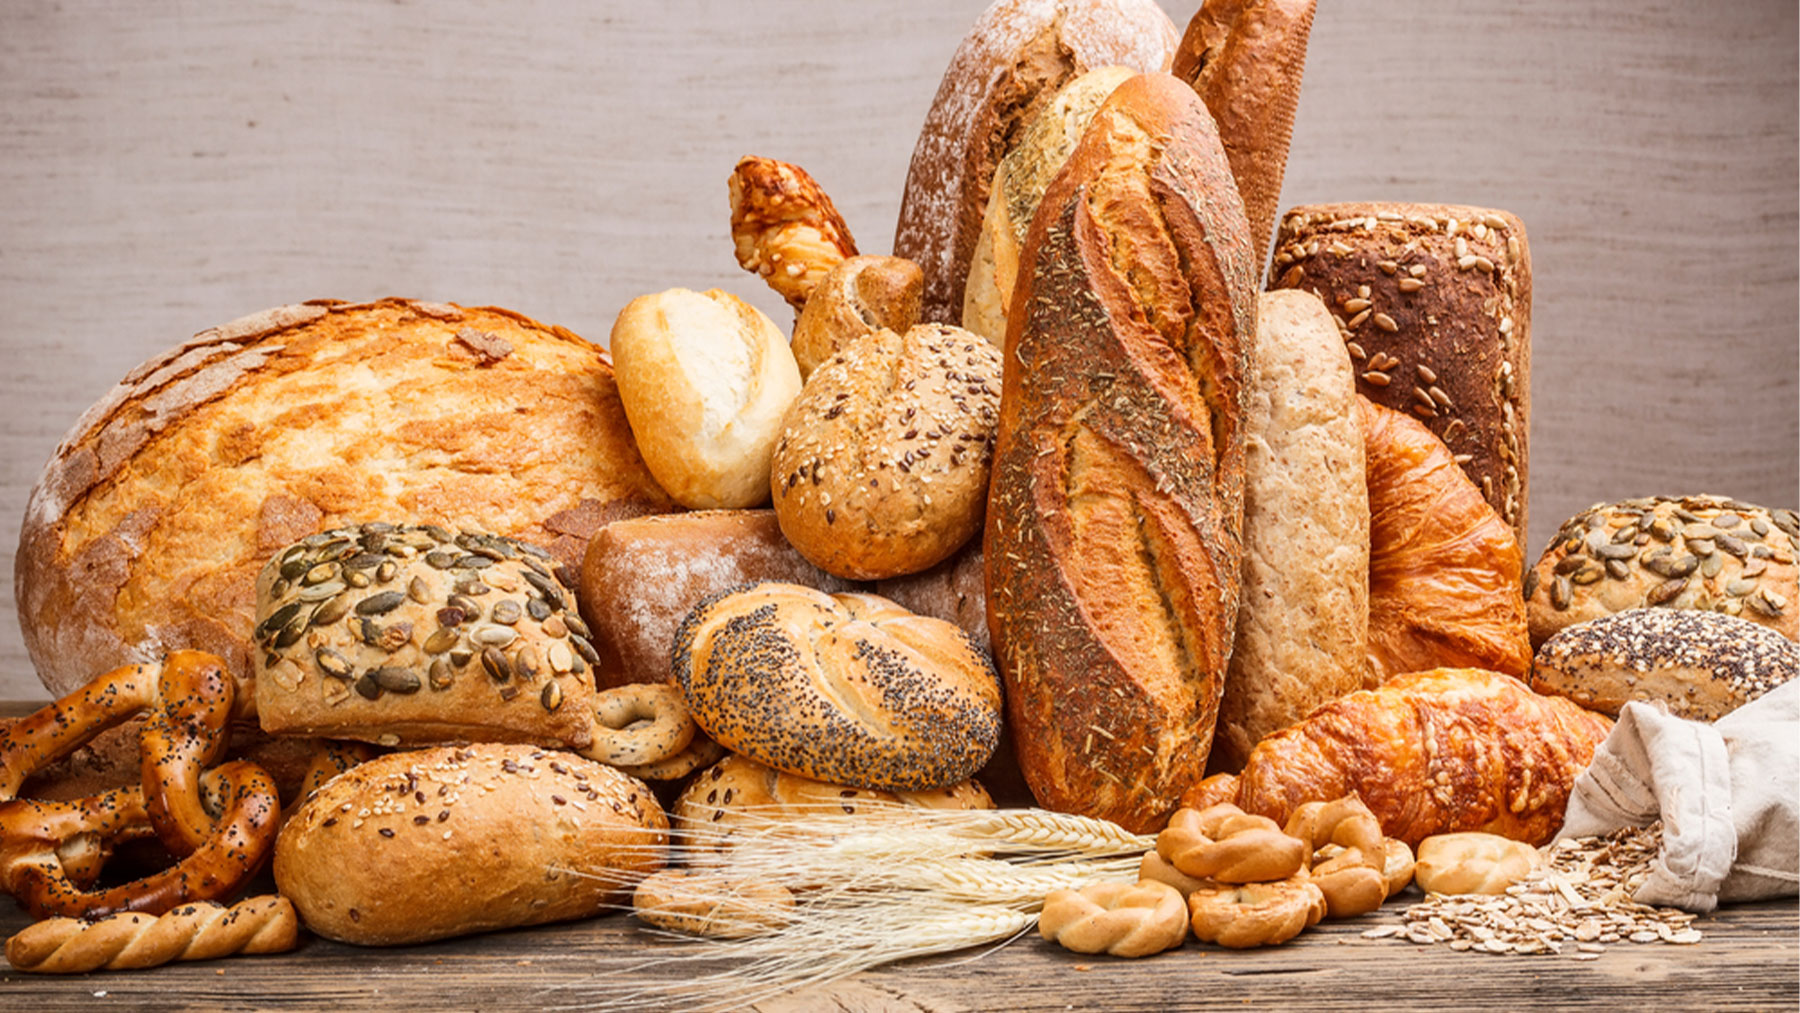 Harina, agua y levadura son los ingredientes básicos del pan.